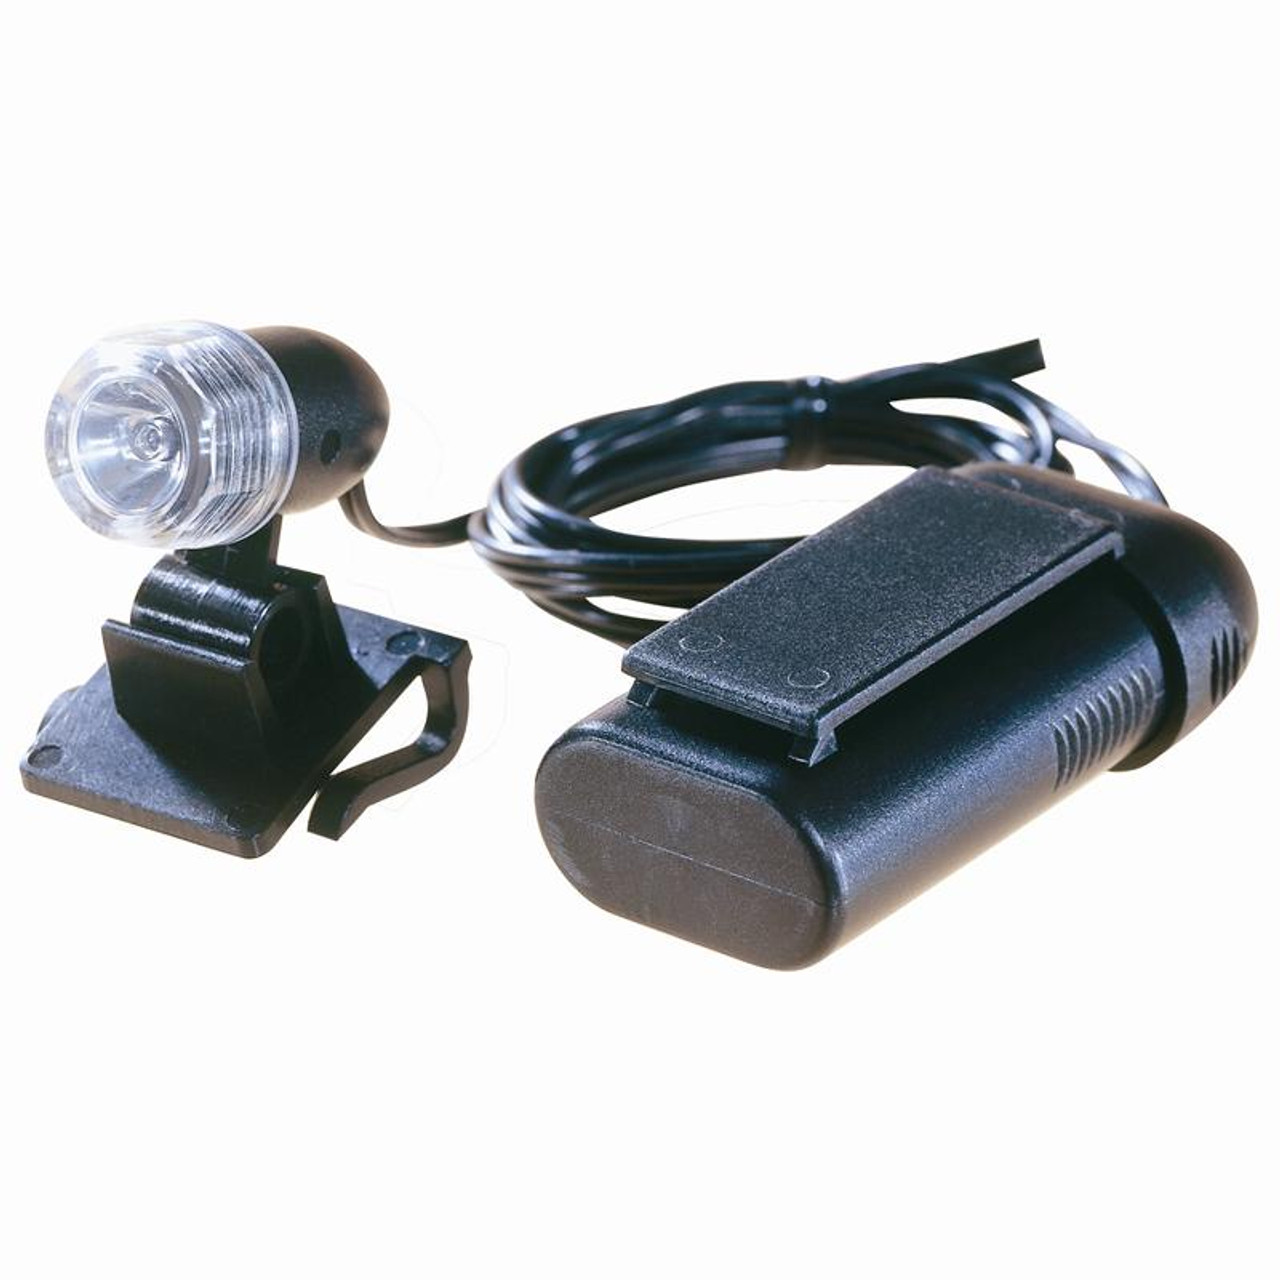 Visor Light for Optivisor Magnifier- 10-in. Cord